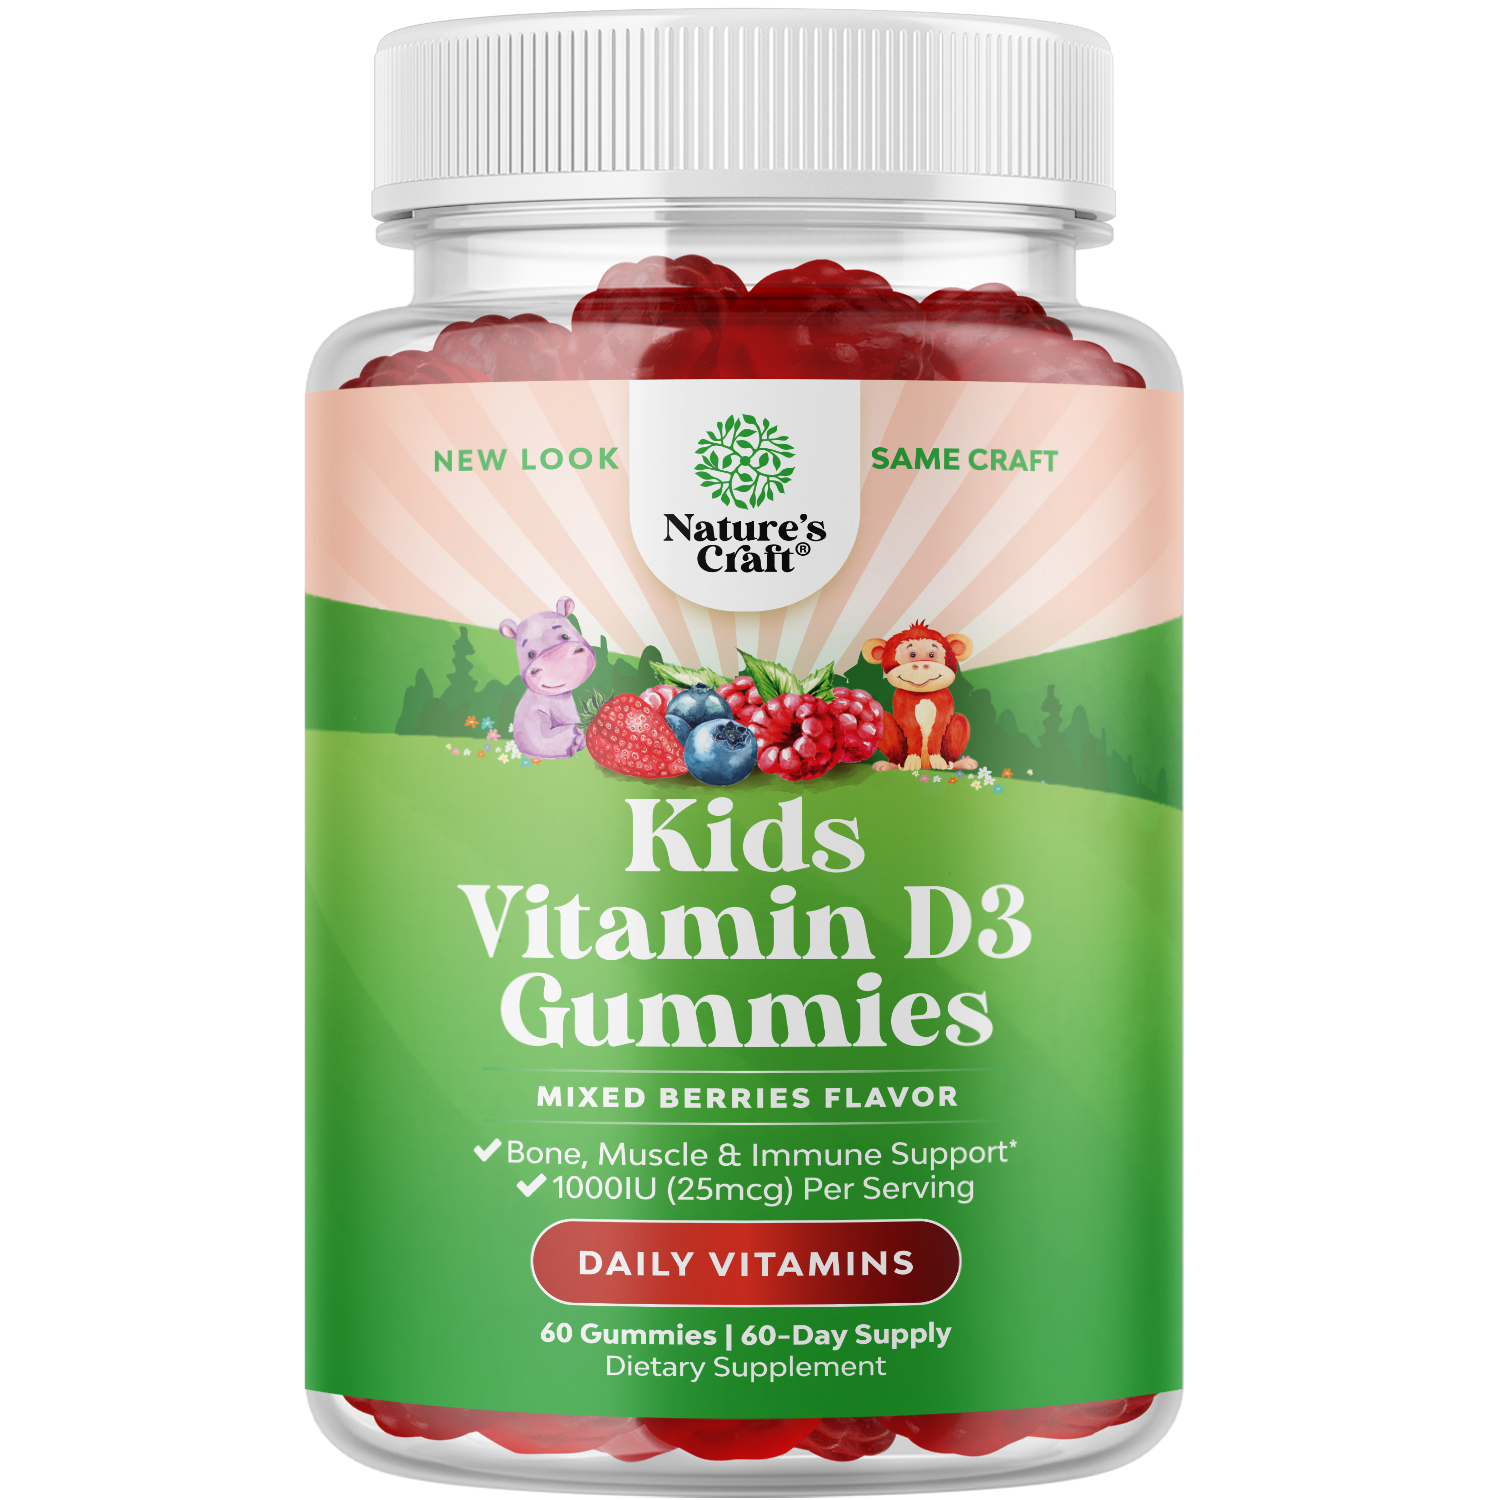 Kids Vitamin D3 Gummies - 60 Gummies